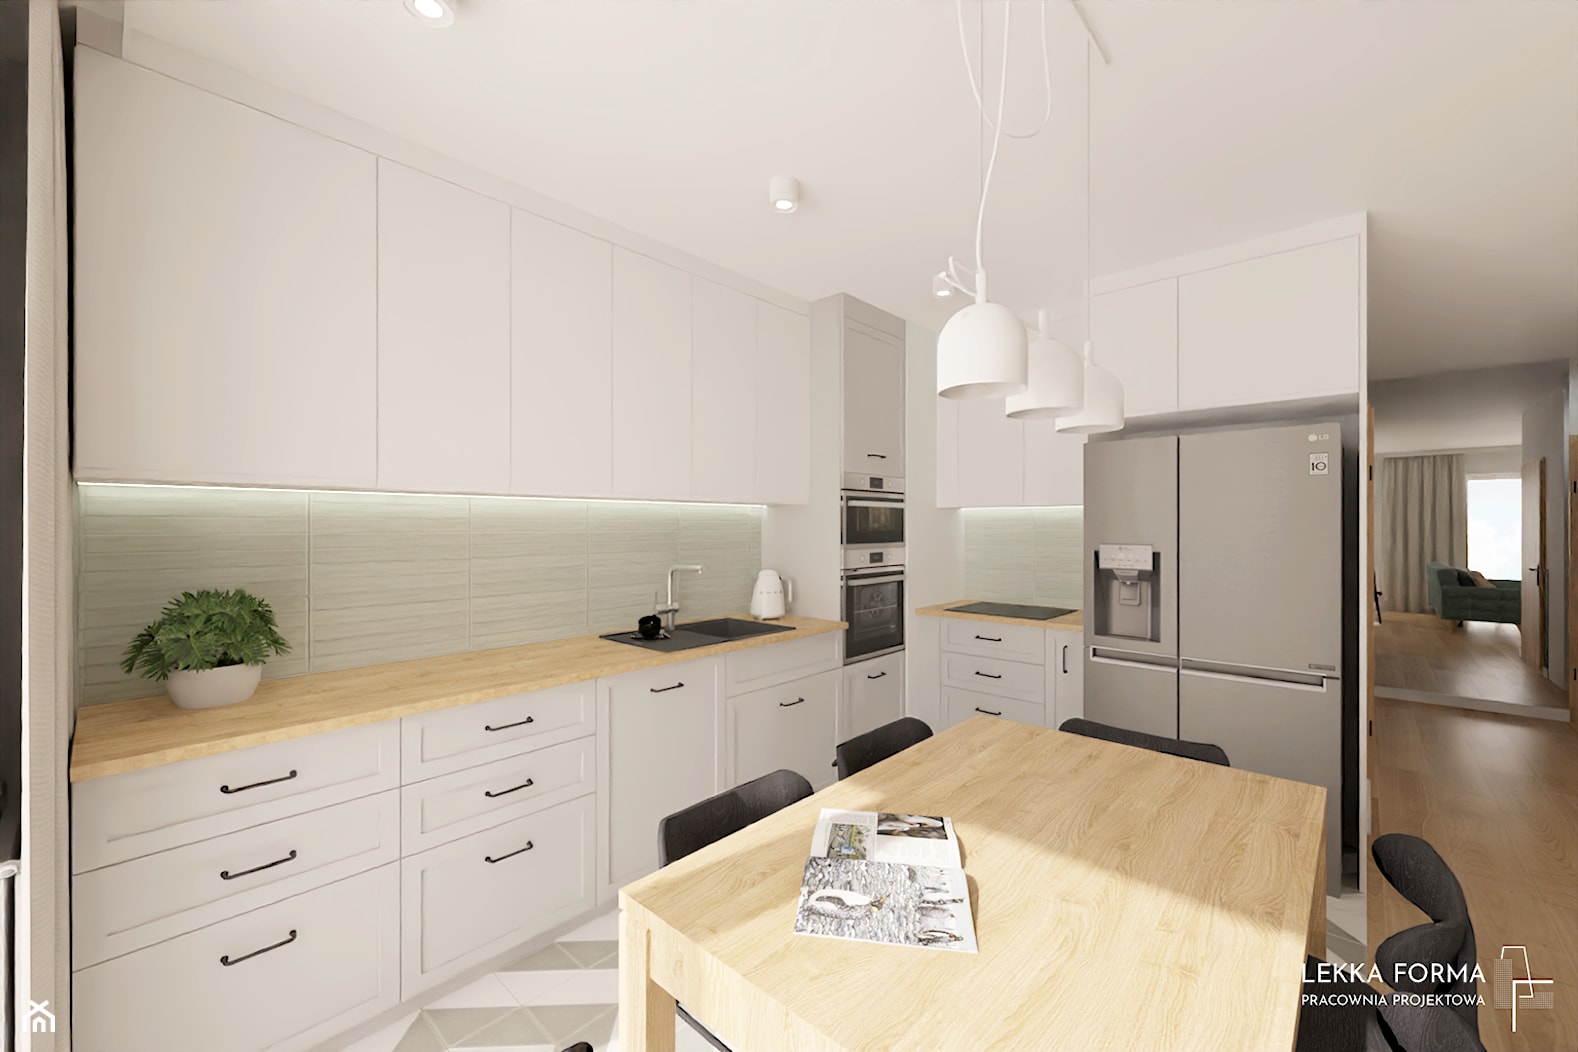 Szare i białe fronty w kuchni - zdjęcie od Lekka Forma - pracownia projektowa - Homebook